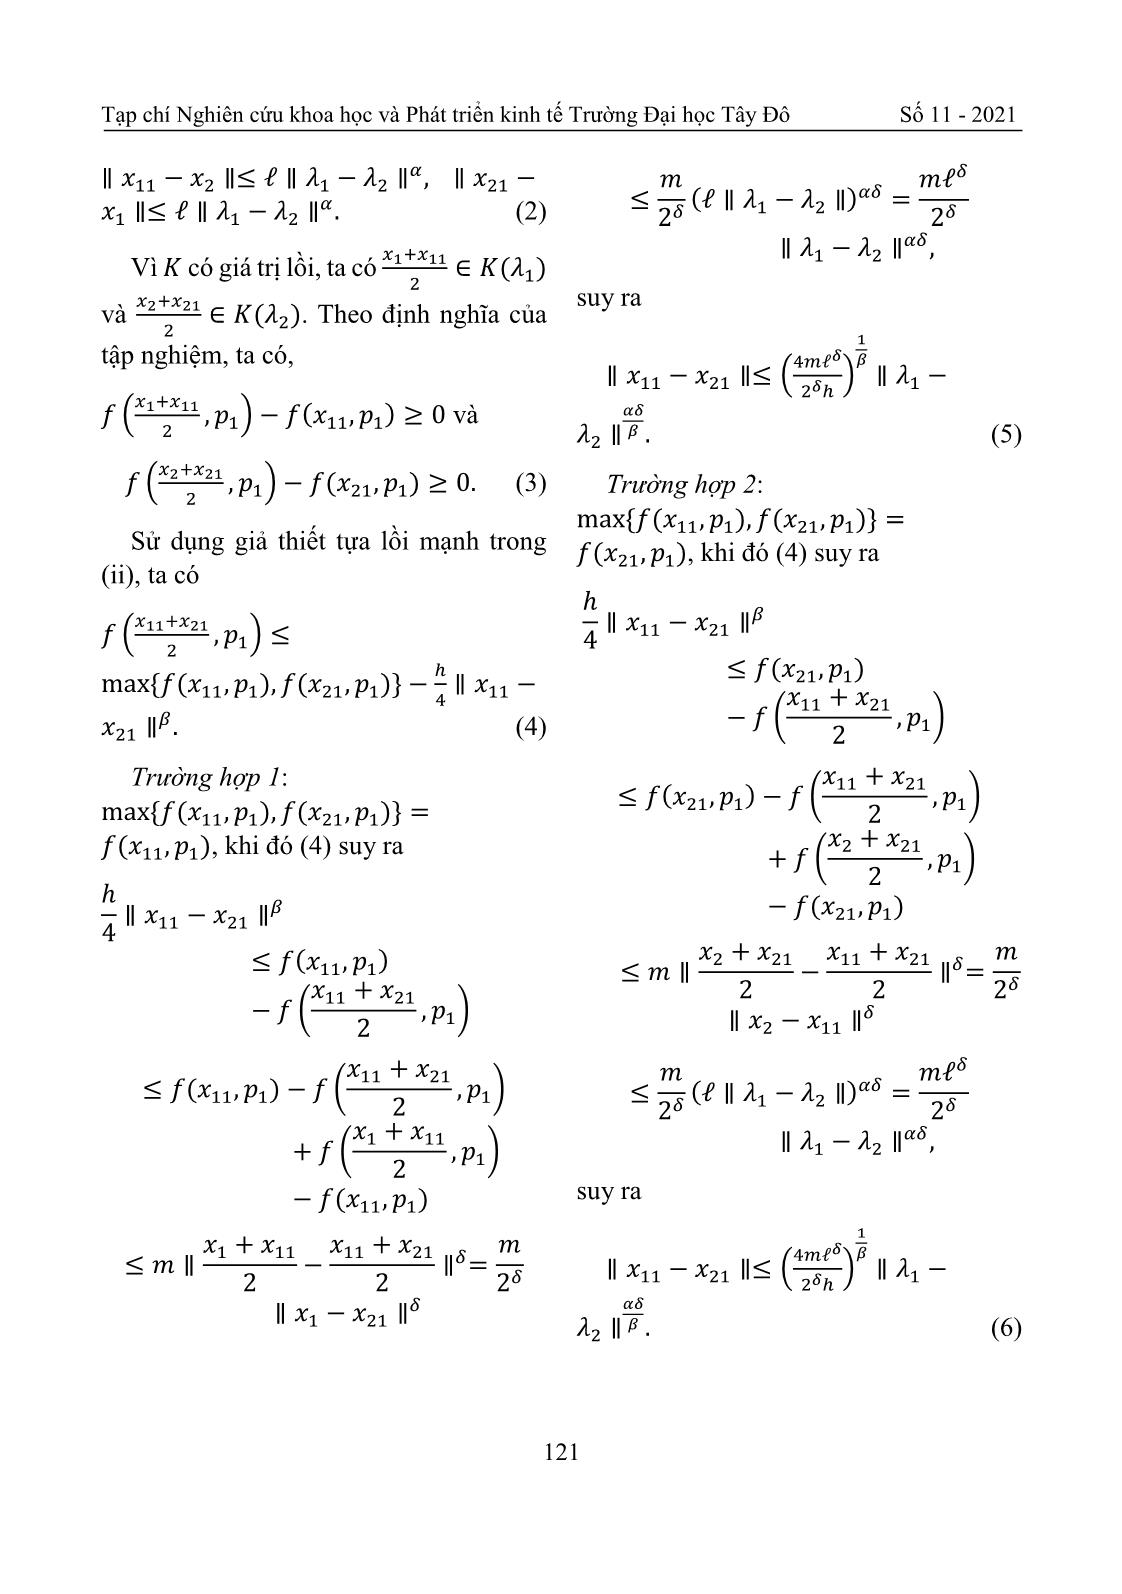 Tính liên tục Holder của ánh xạ nghiệm bài toán cực tiểu hóa có điều kiện trang 5